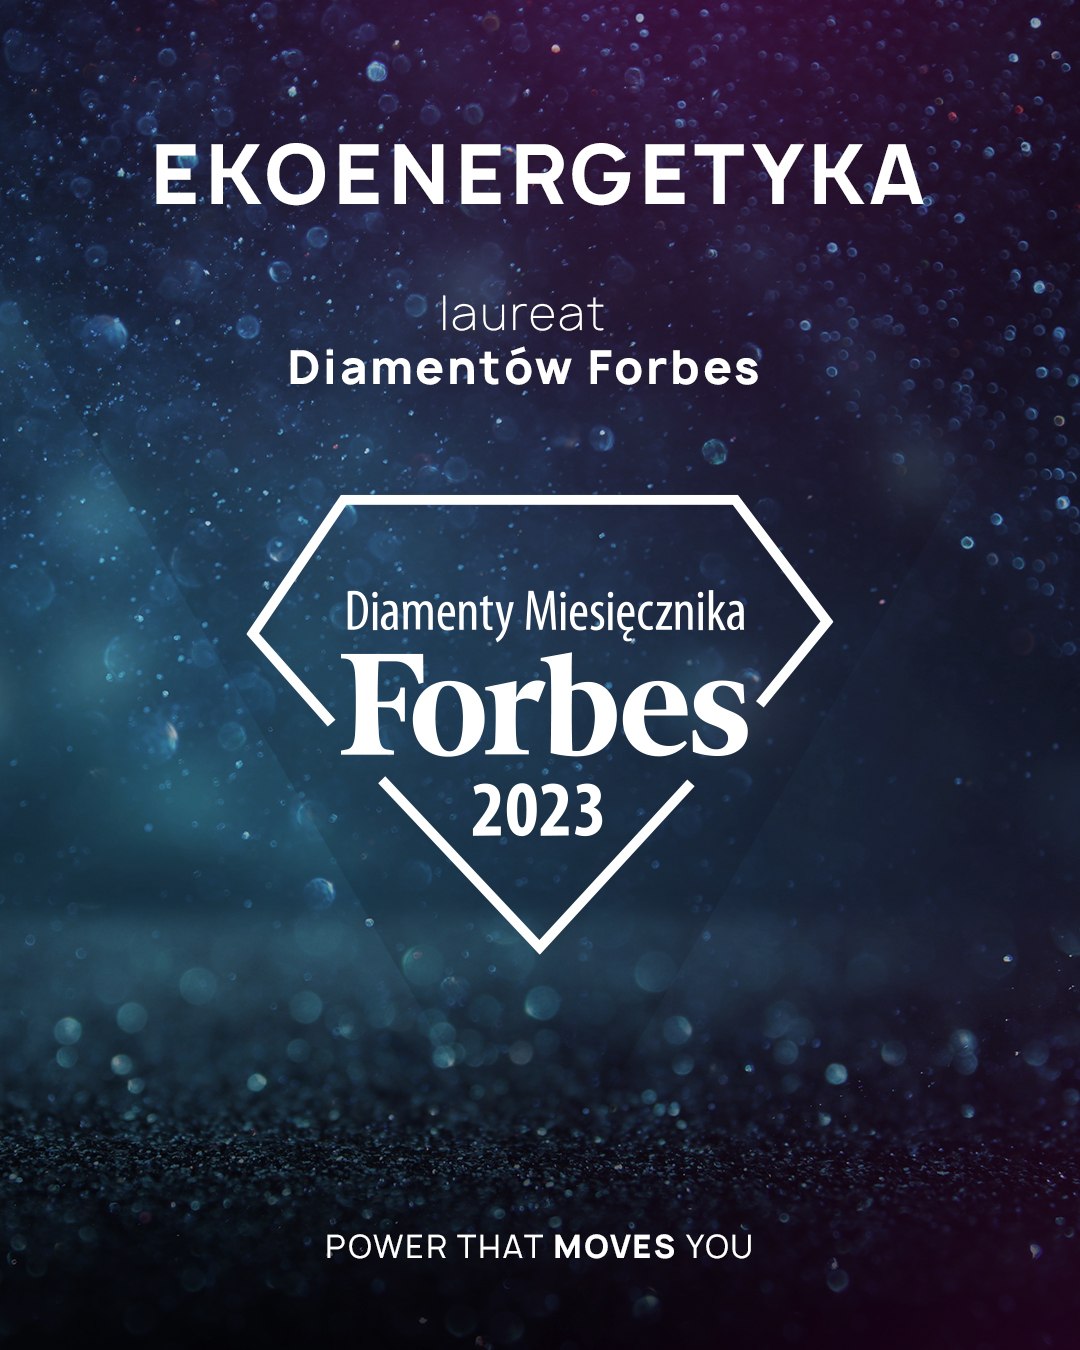 Ekoenergetyka mit dem Forbes Diamanten ausgezeichnet, Ekoenergetyka